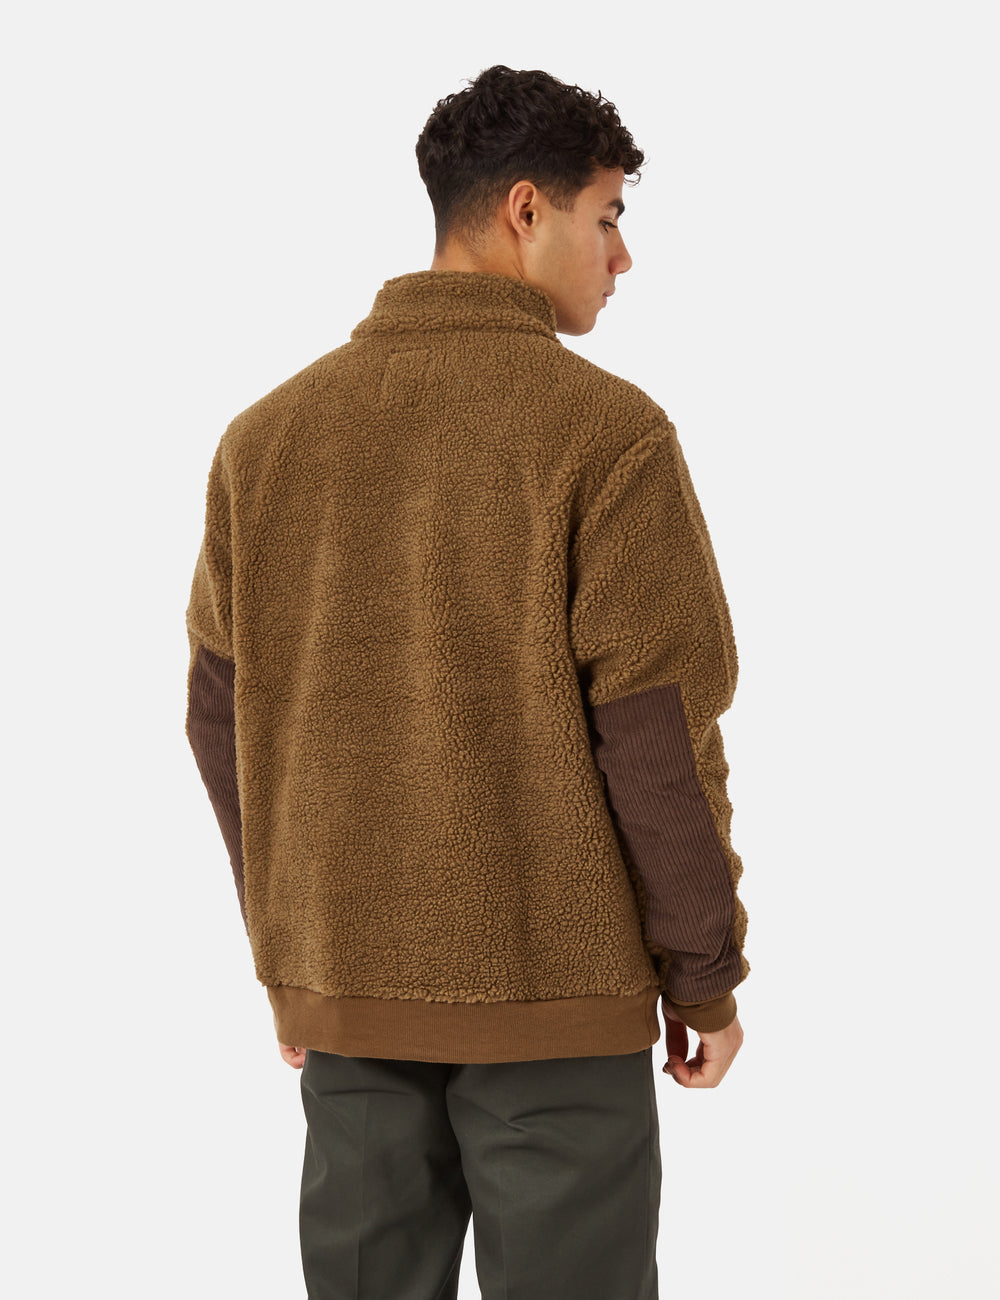 KAVU  Calawah Fleece Pullover for Men – Mattie B's Gifts & Apparel